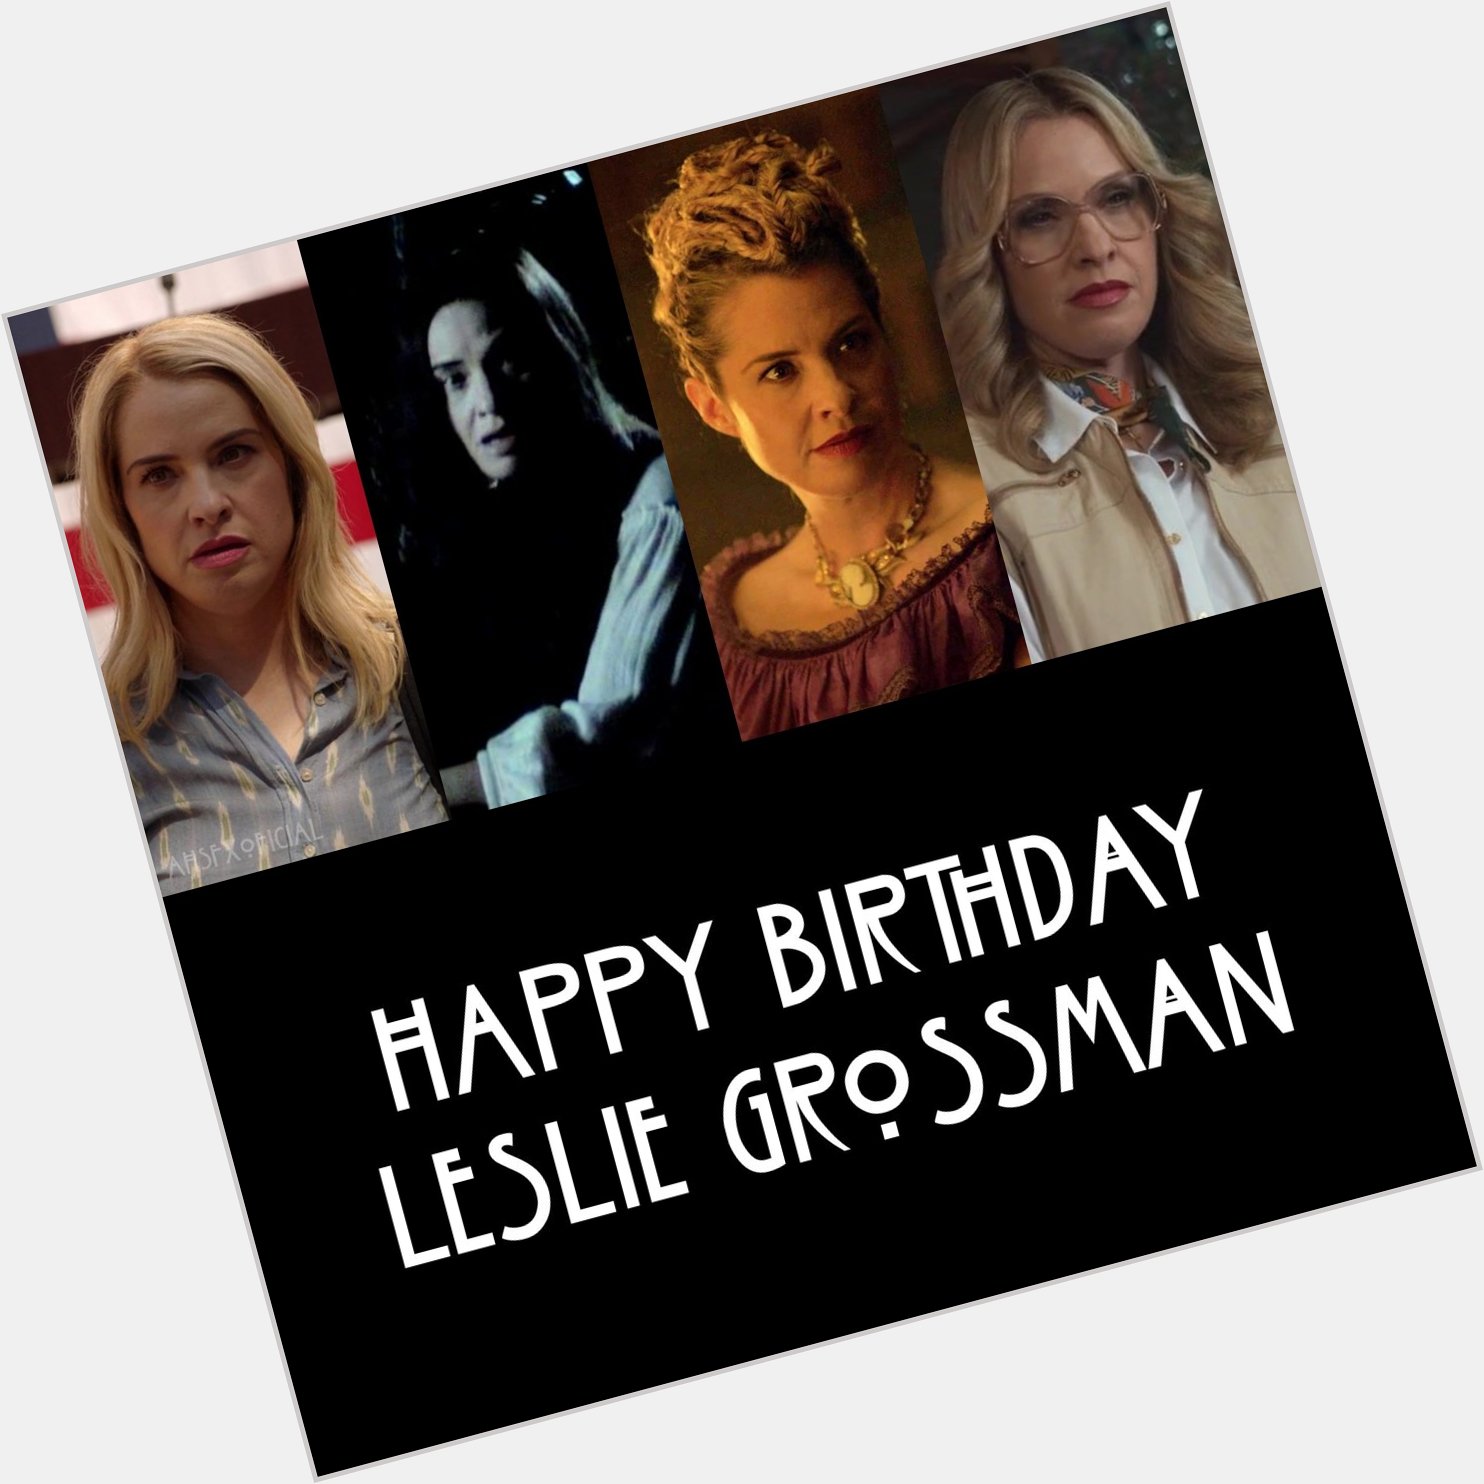 Hoje a nossa querida atriz Leslie Grossman está fazendo aniversário! 

Happy birthday   